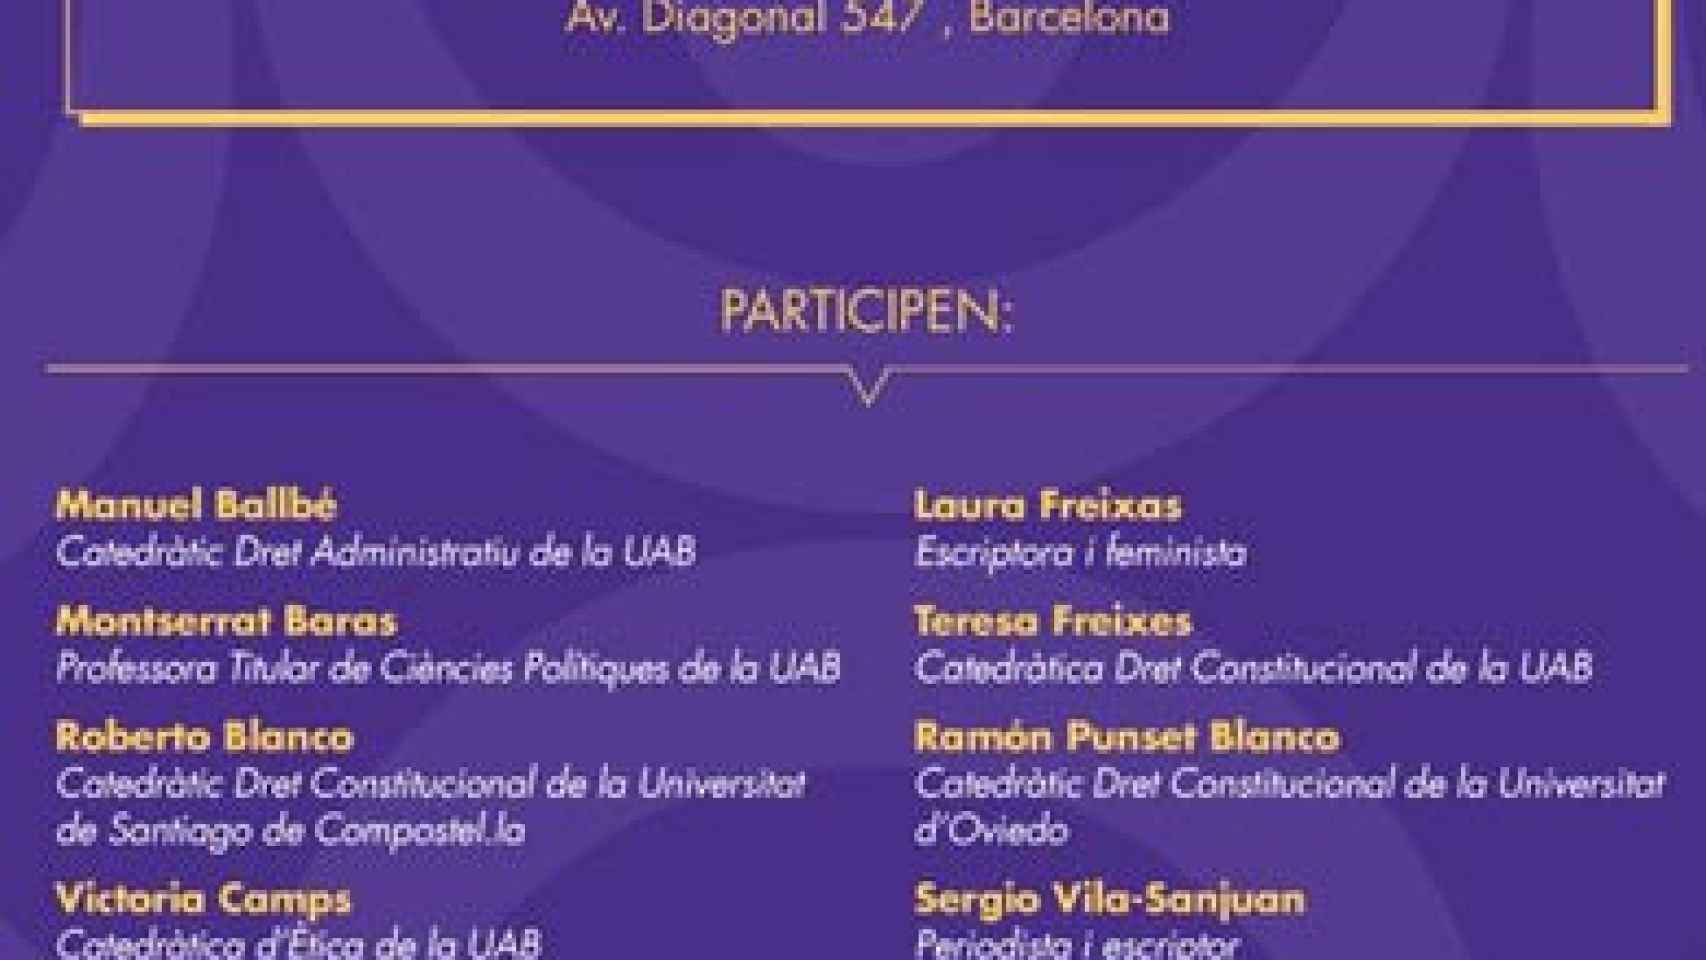 Acto de Sociedad Civil Catalana en Barcelona con motivo del Día de la Constitución